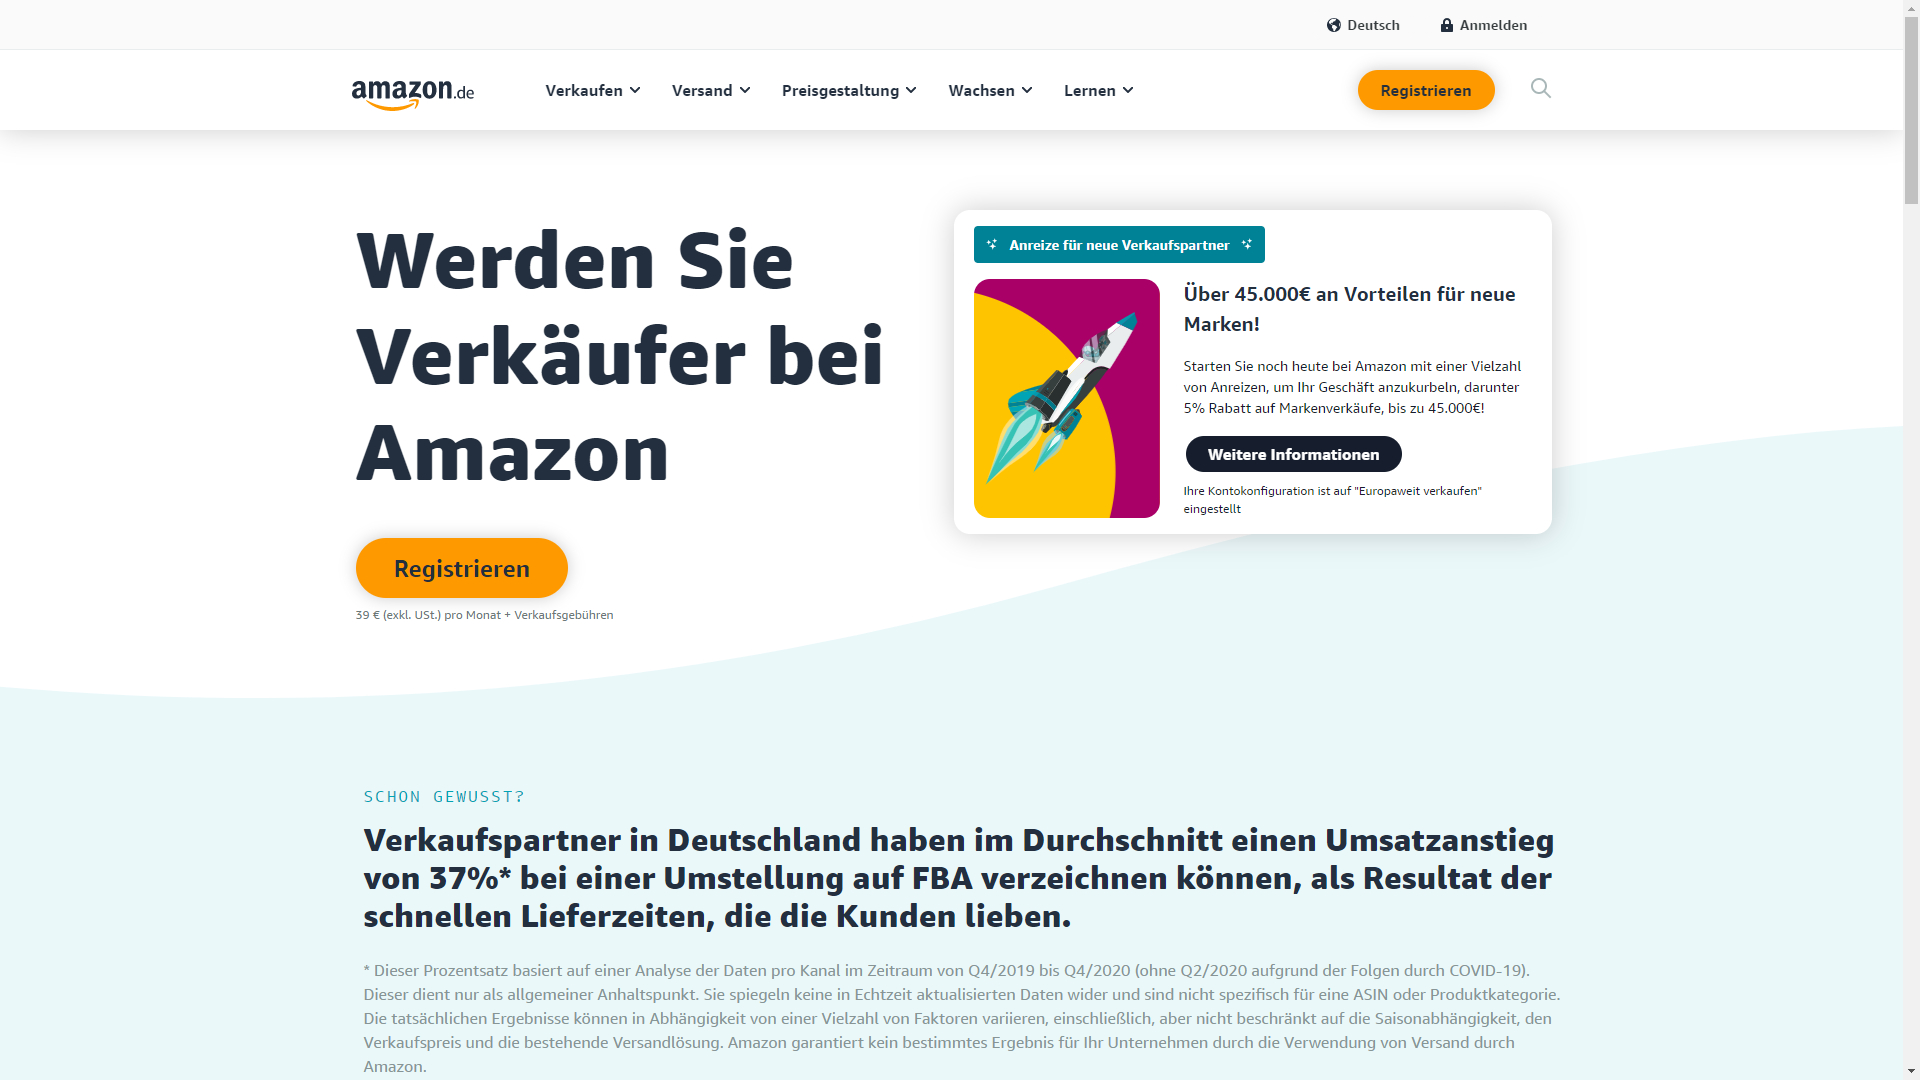 Der Screenshot zeigt die Webseite sell.amazon.de auf der man ein Amazon Verkäuferkonto eröffnen kann.